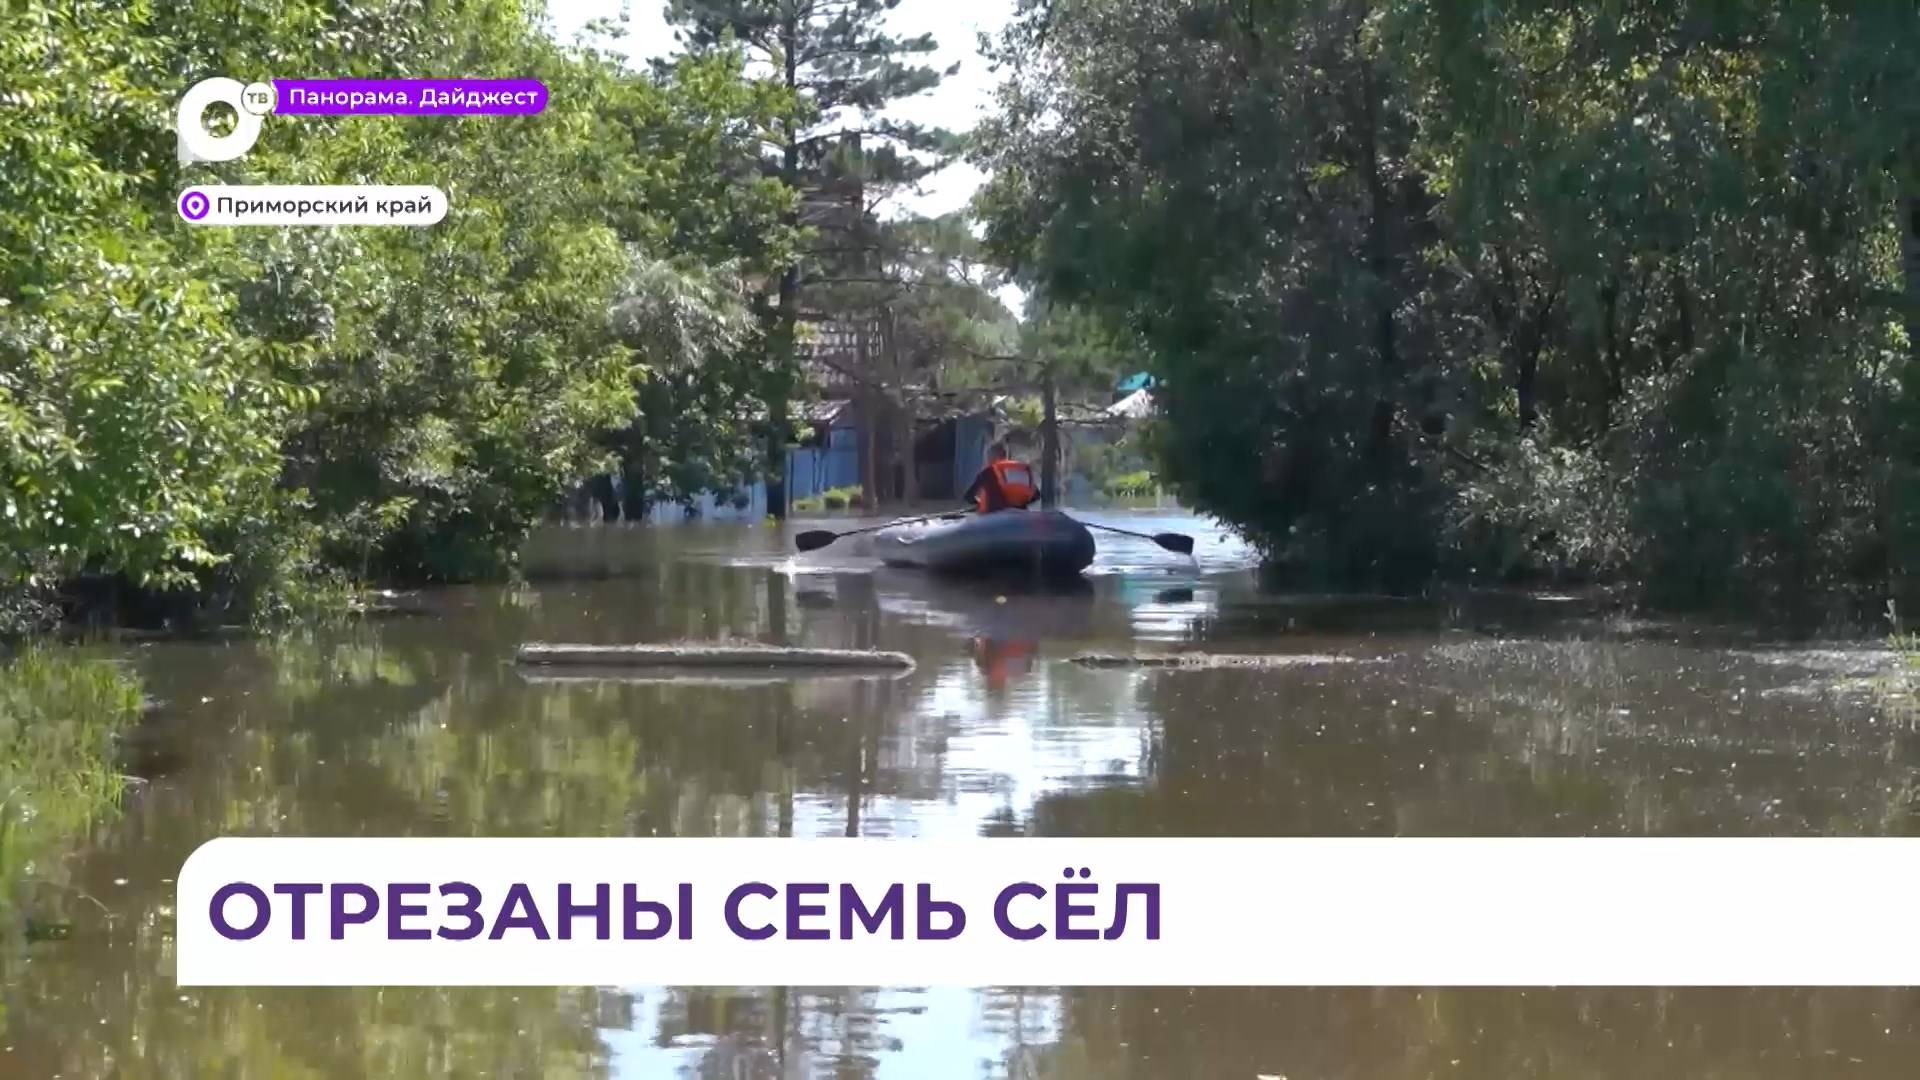 Семь населенных пунктов в трех районах Приморья отрезаны от транспортного сообщения из-за паводков